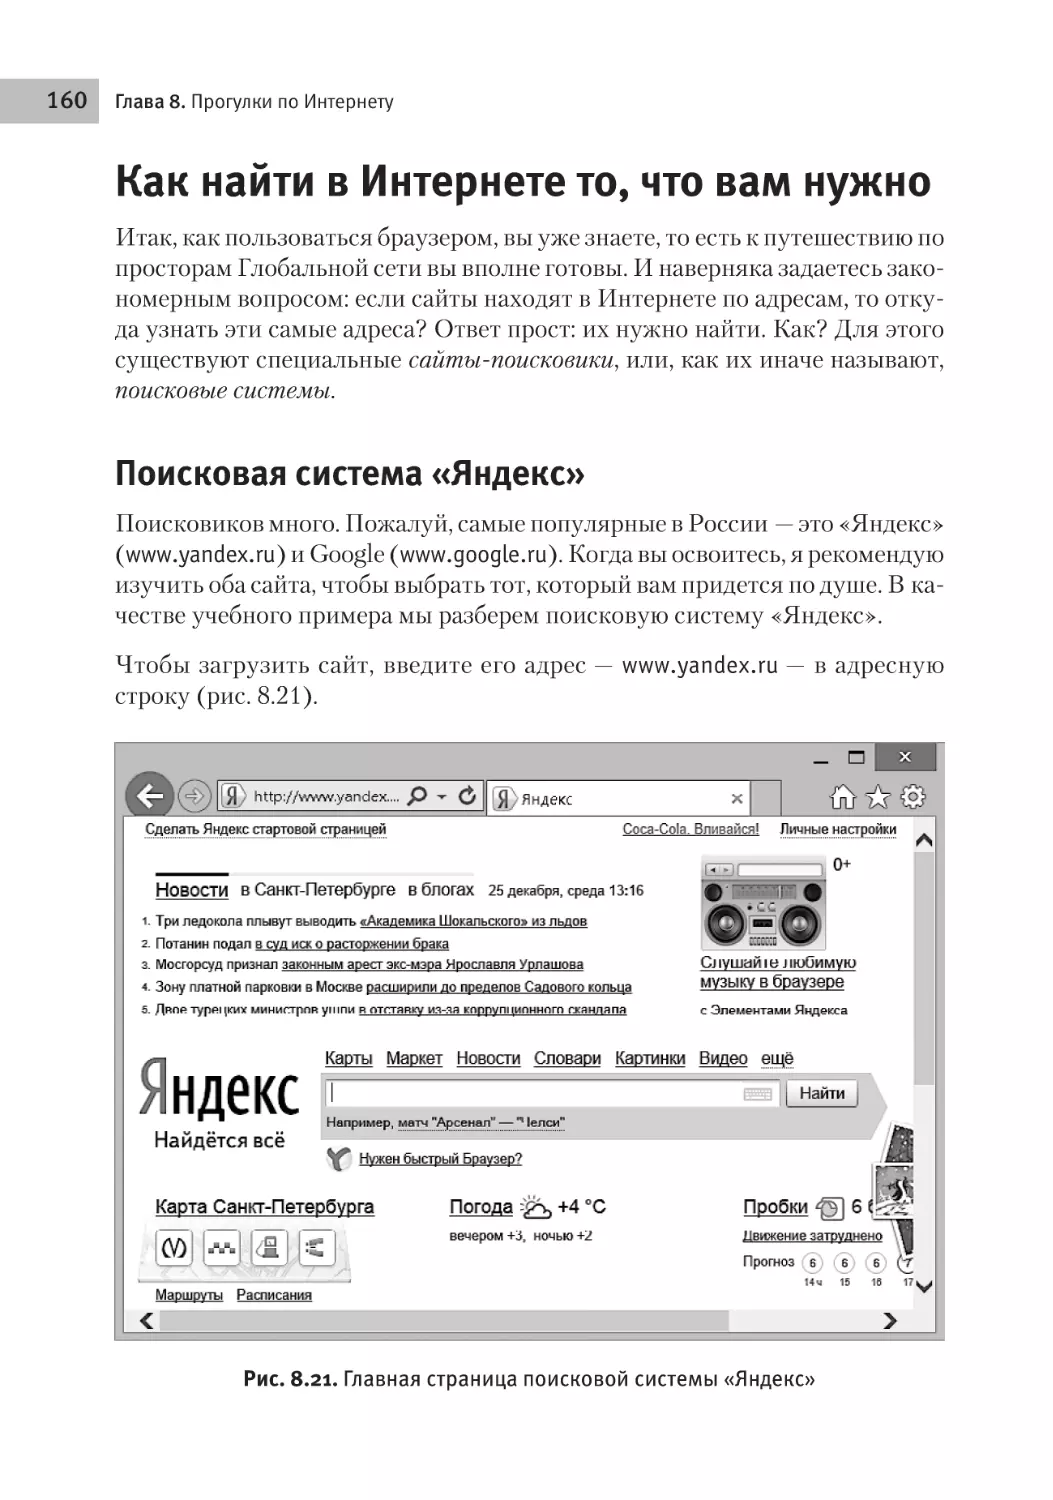 Как найти в Интернете то, что вам нужно
Поисковая система «Яндекс»